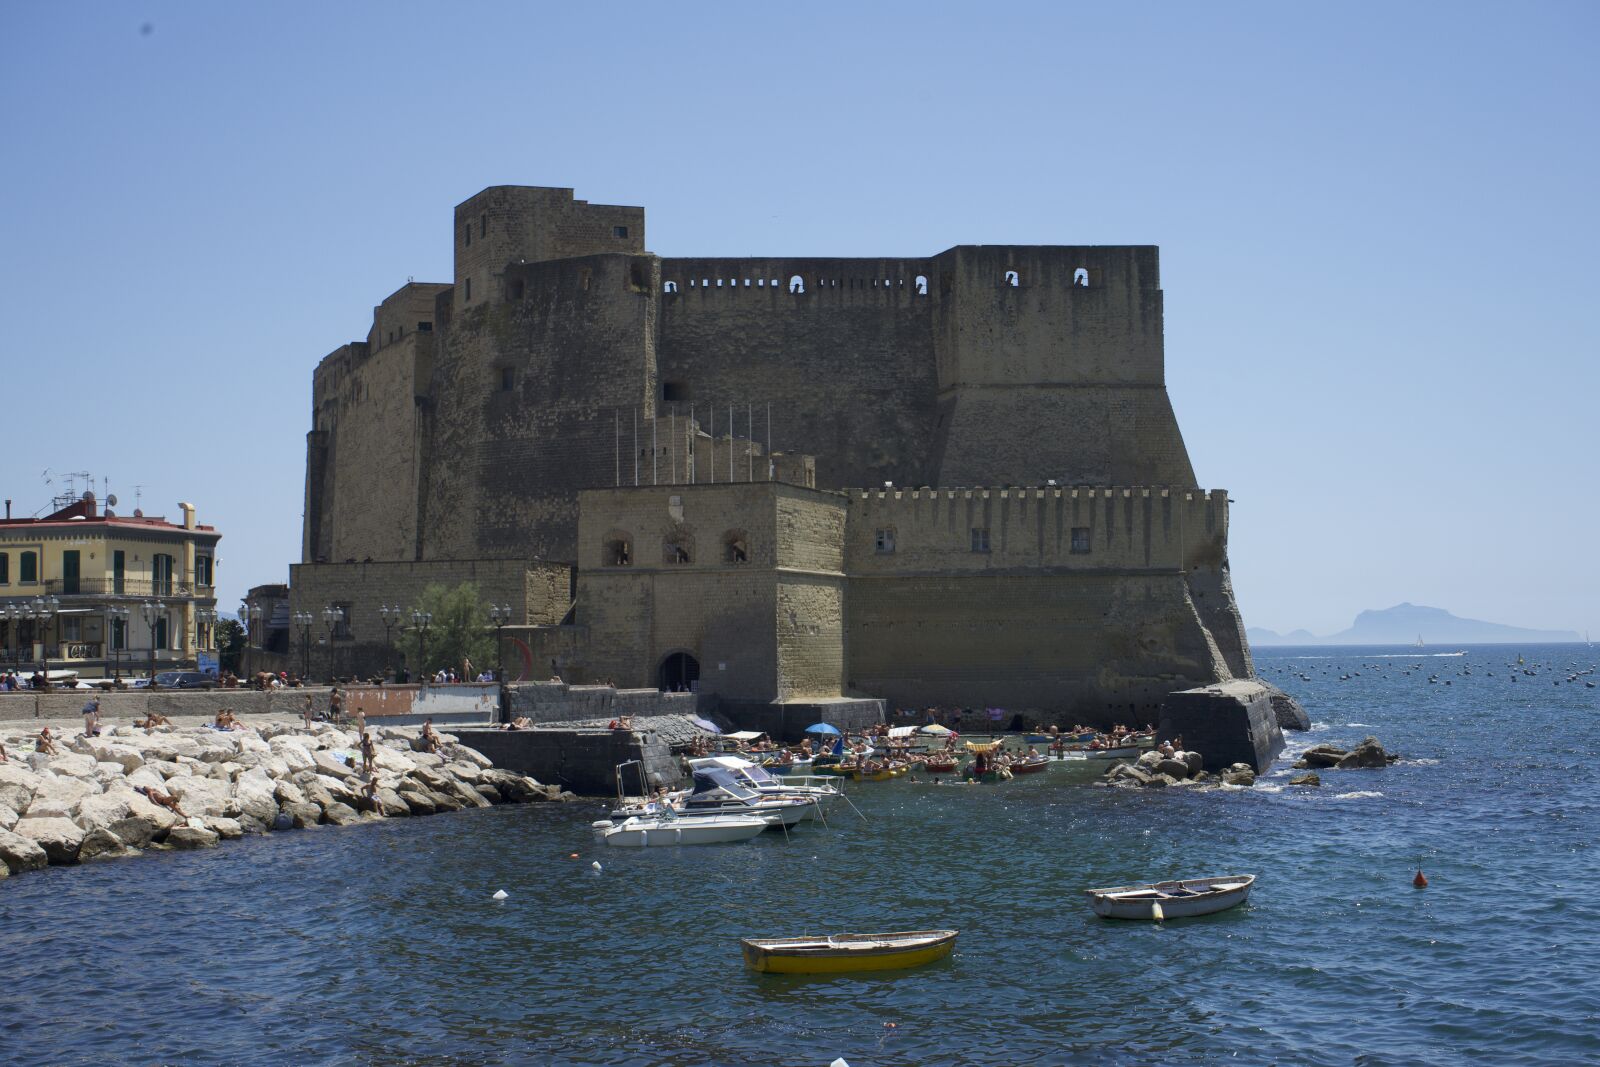 Sony a7 sample photo. Naples, castelldellovo, castles photography